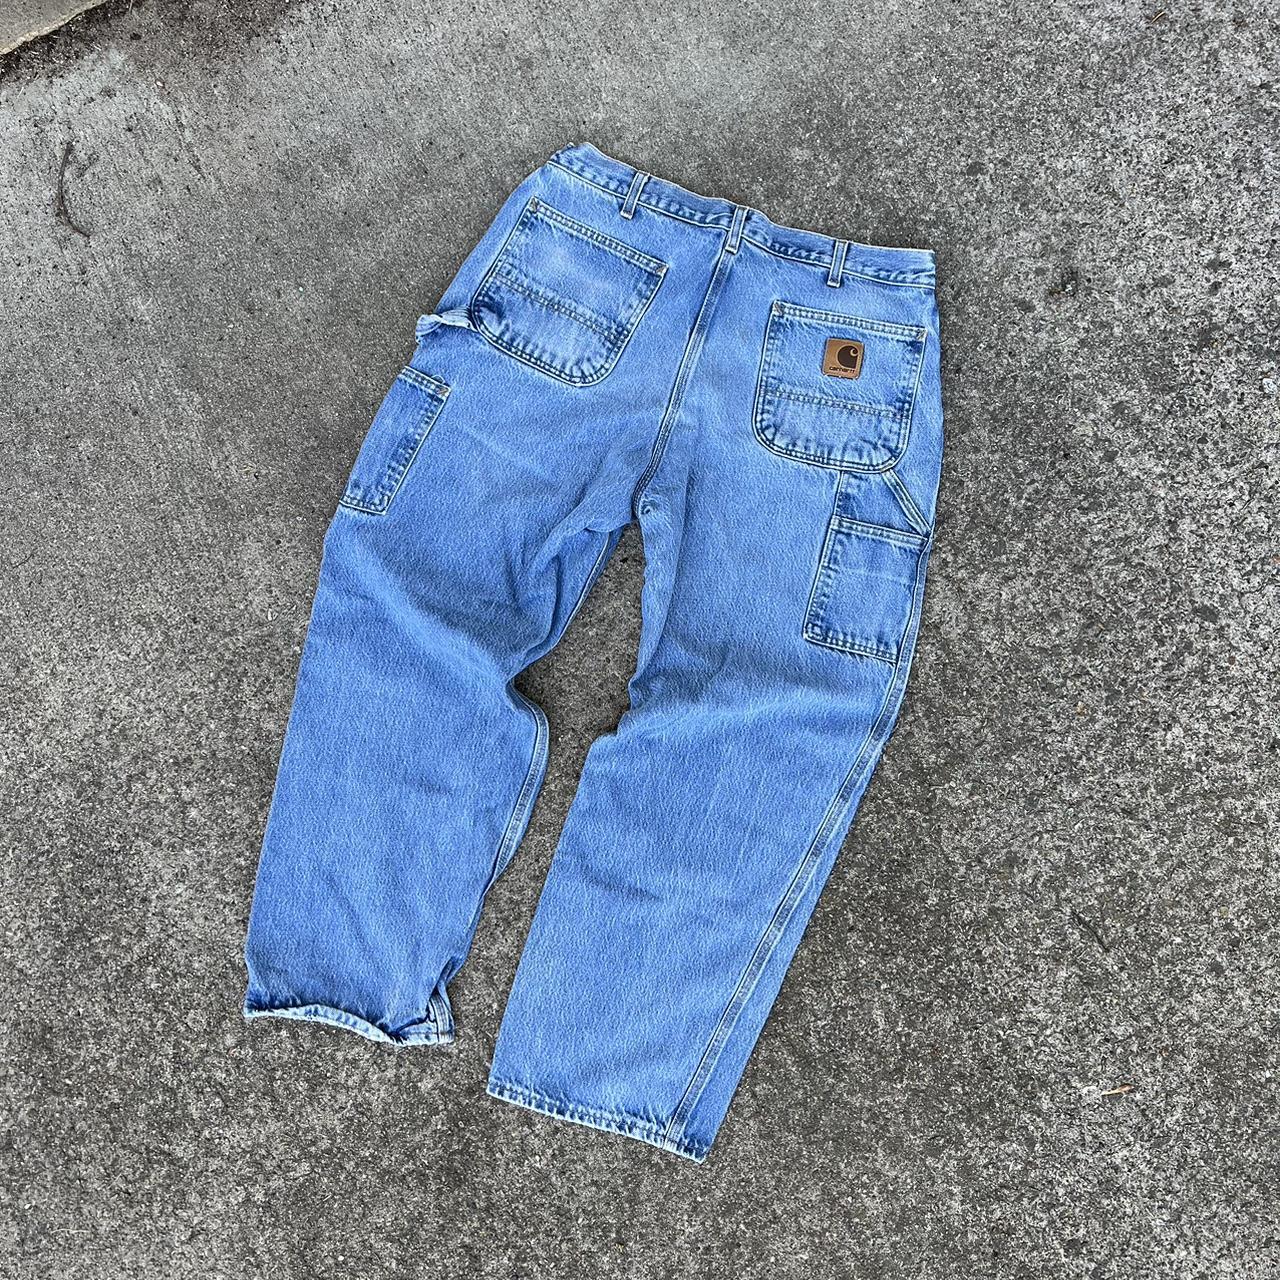 Vintage 90s Carhartt Carpenter Denim Jeans Tagged... - Depop